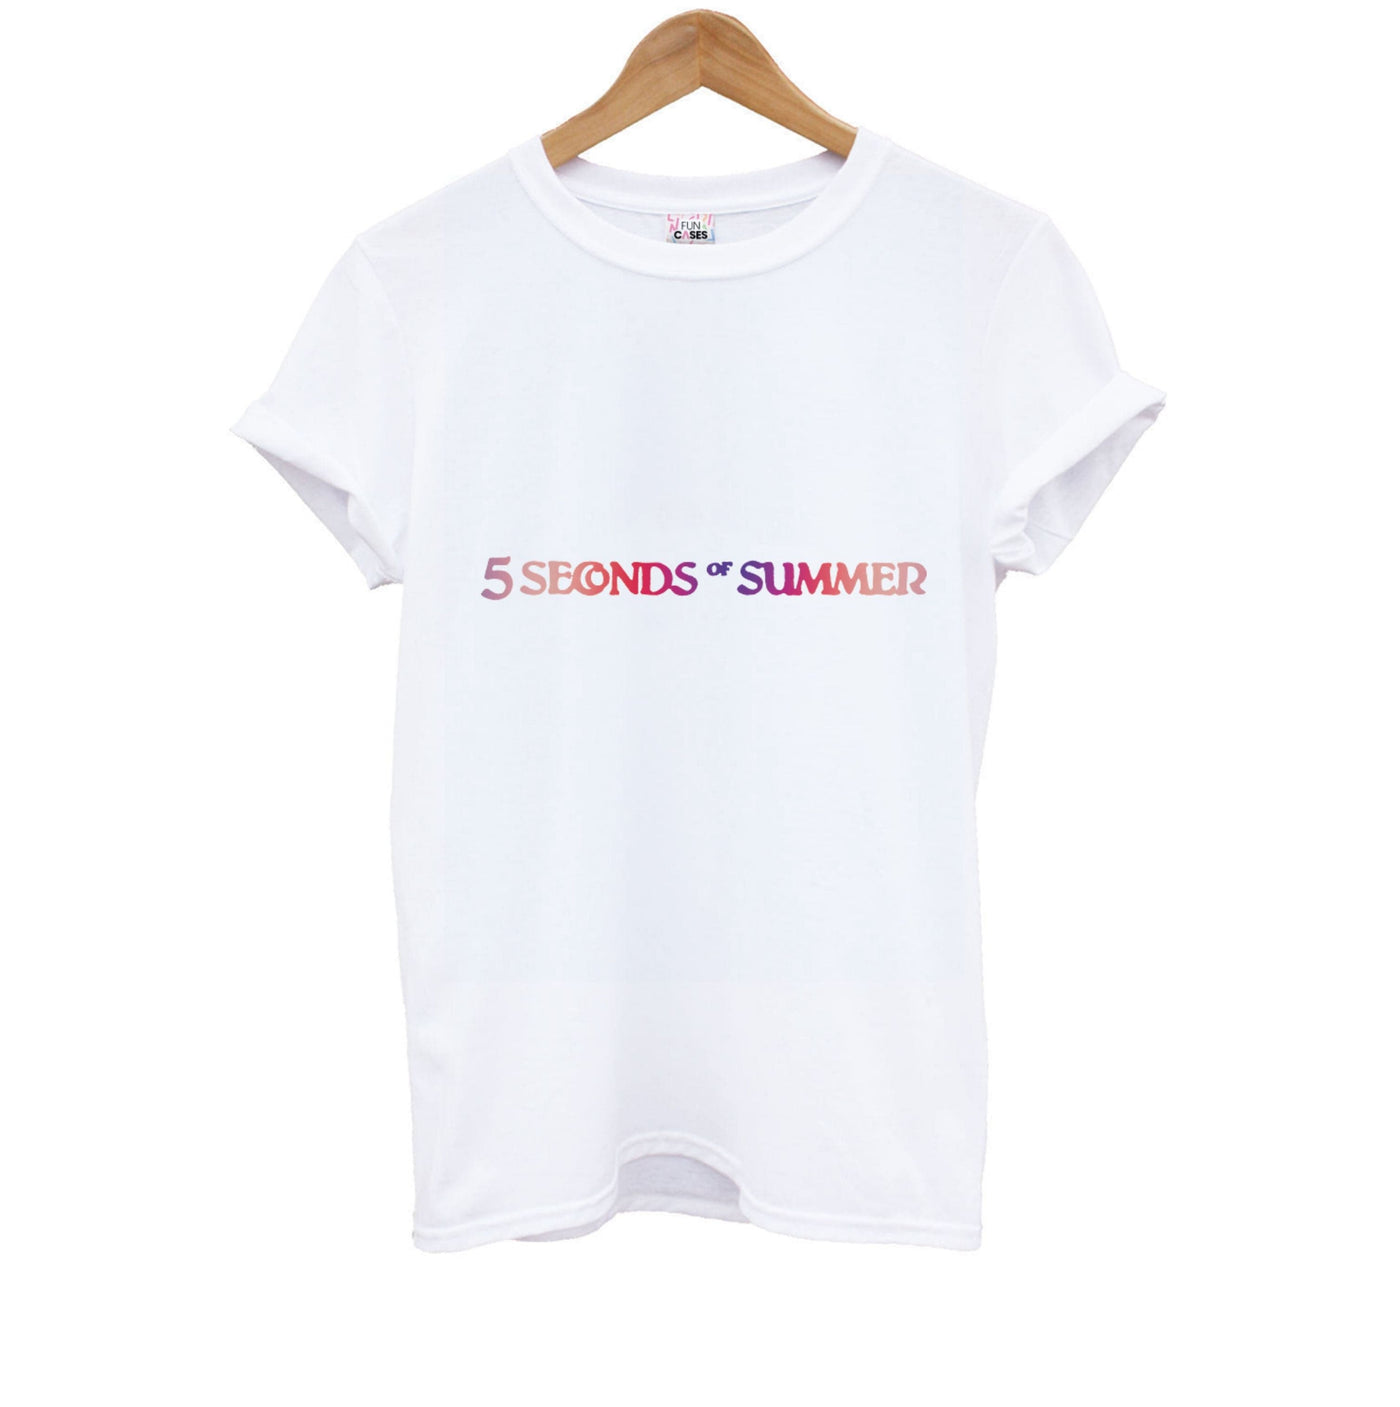 5 Seconds Of Summer Logo Kids T-Shirt